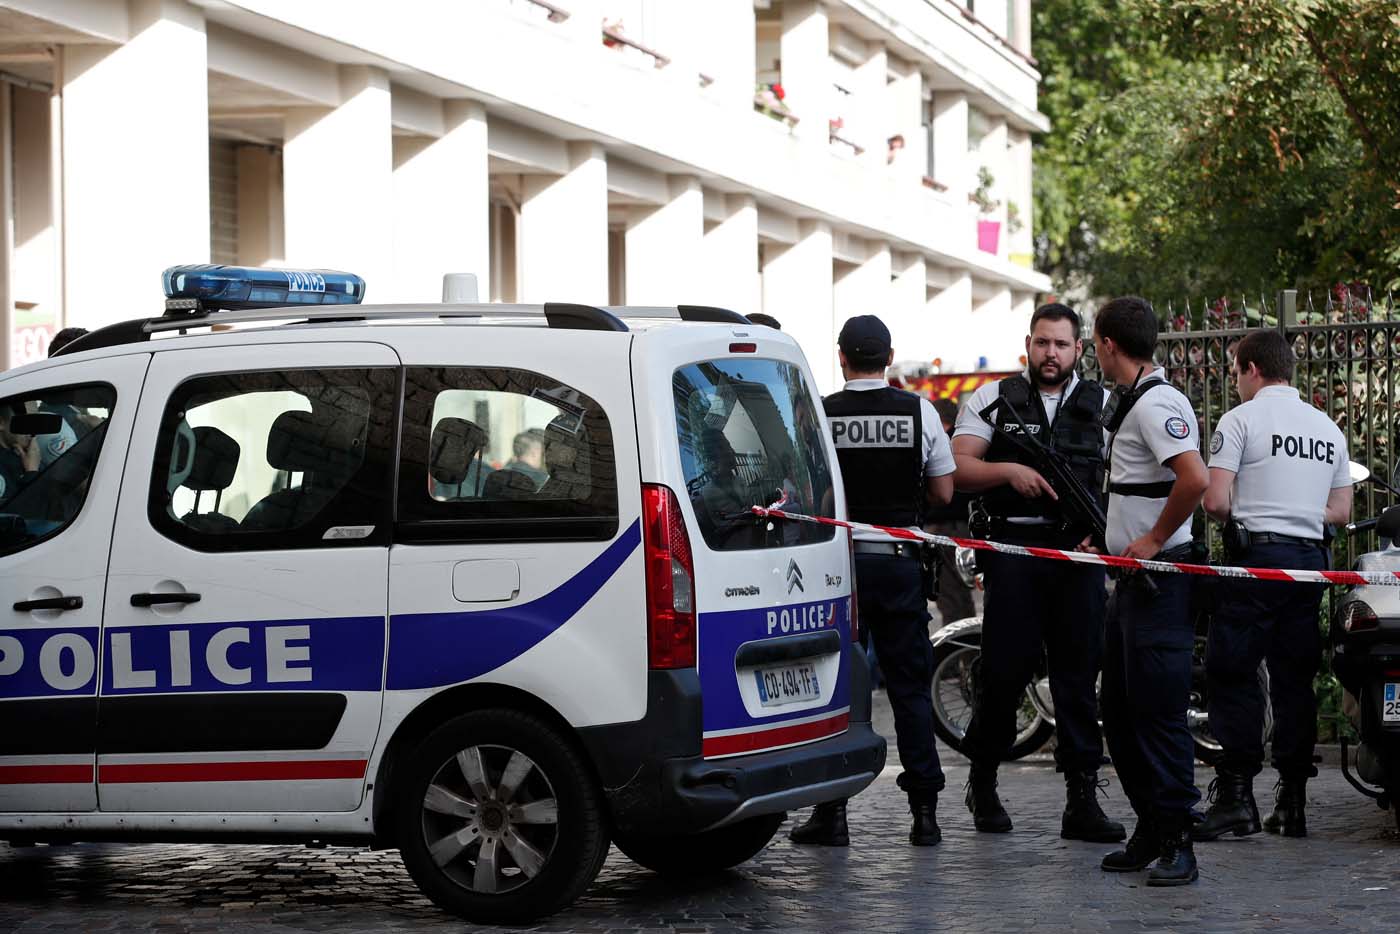 Descubren explosivos artesanales en laboratorio clandestino cerca de París